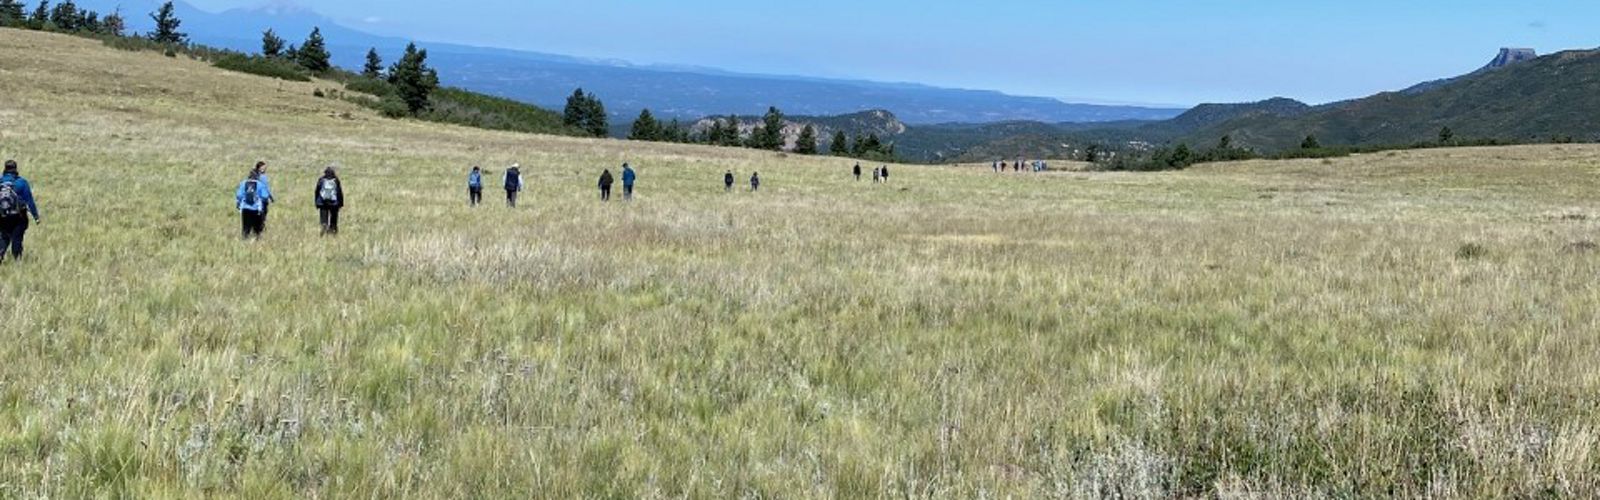 A group of people walking on vast grasslands.